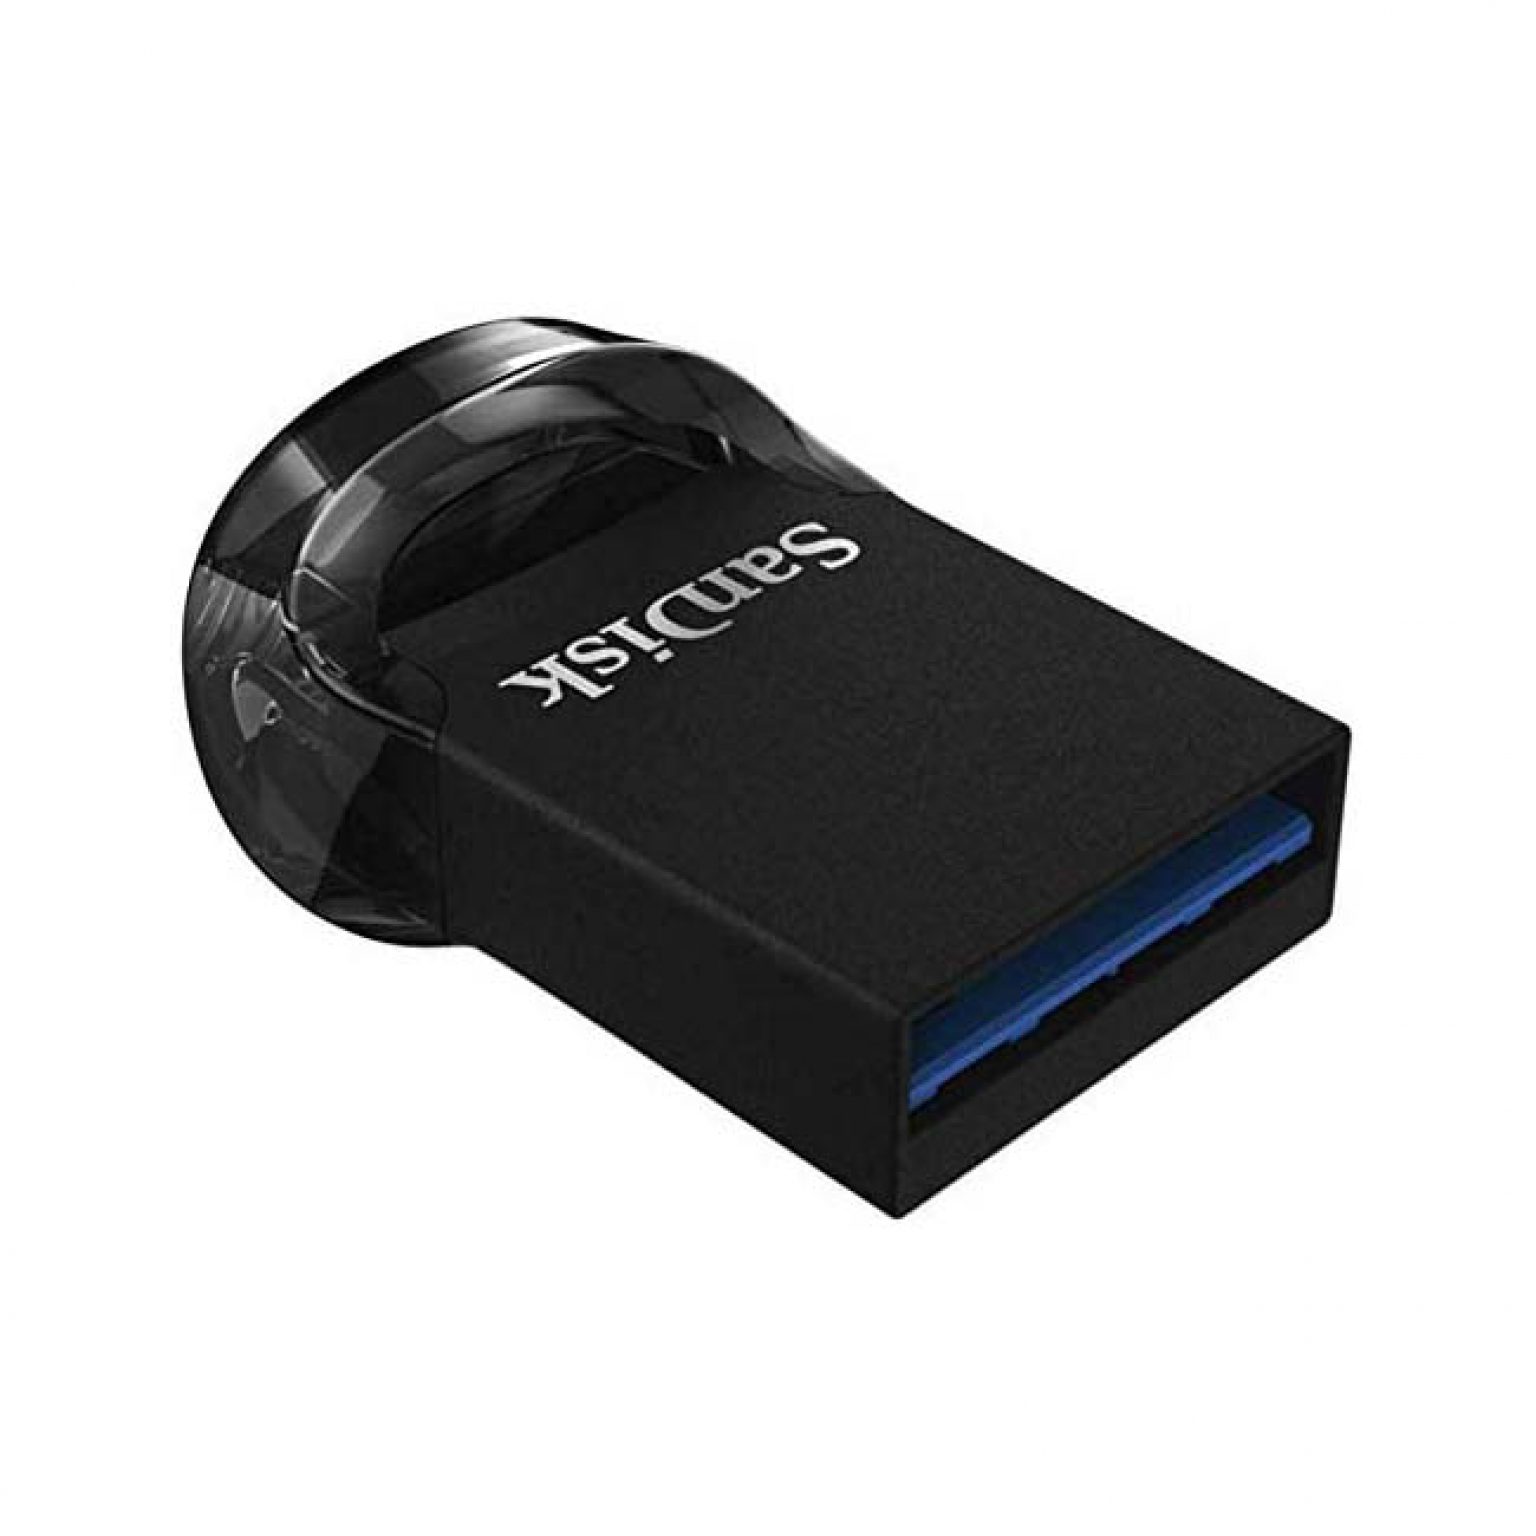 SanDisk 16GB Ultra Fit USB 2